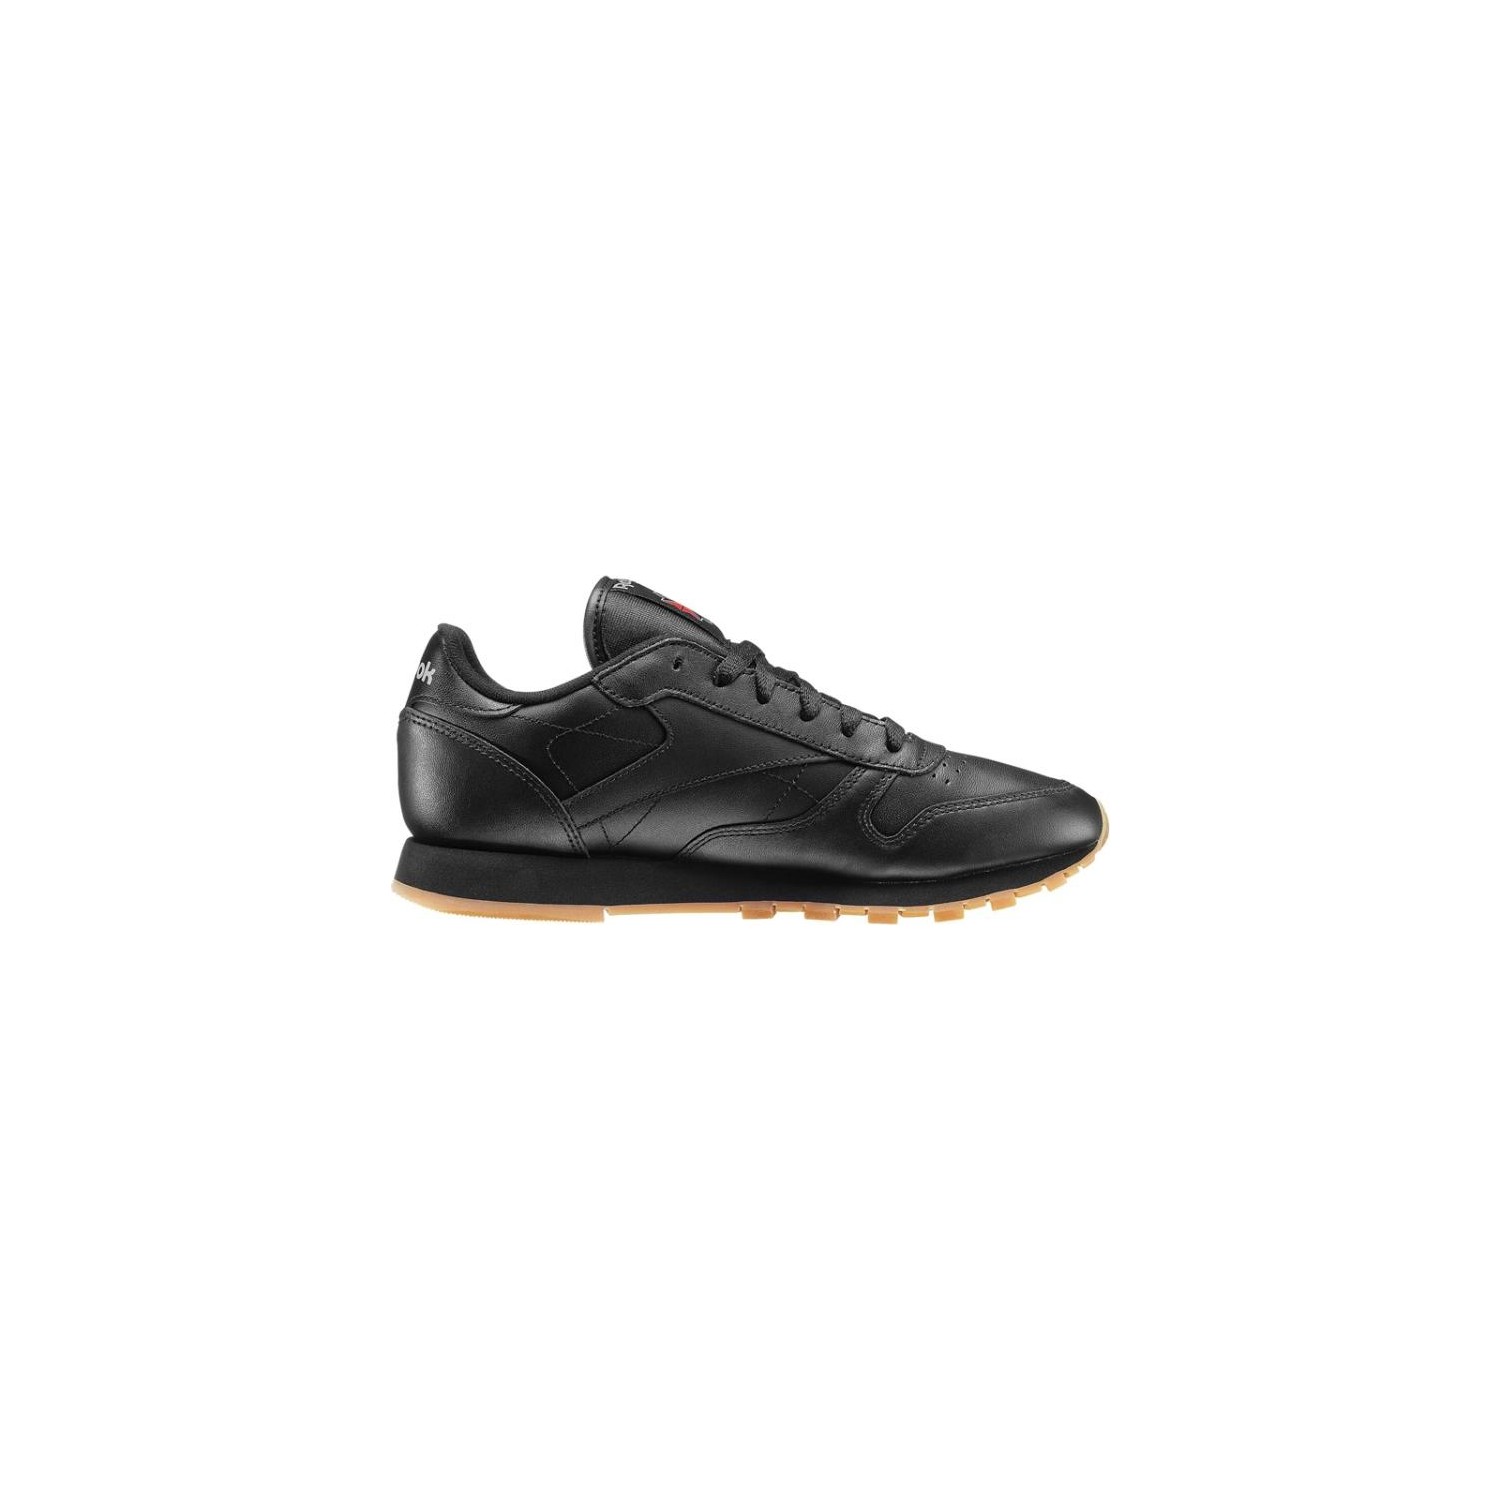 Reebok Leather Kadın Koşu Ayakkabısı 49804 Fiyatı